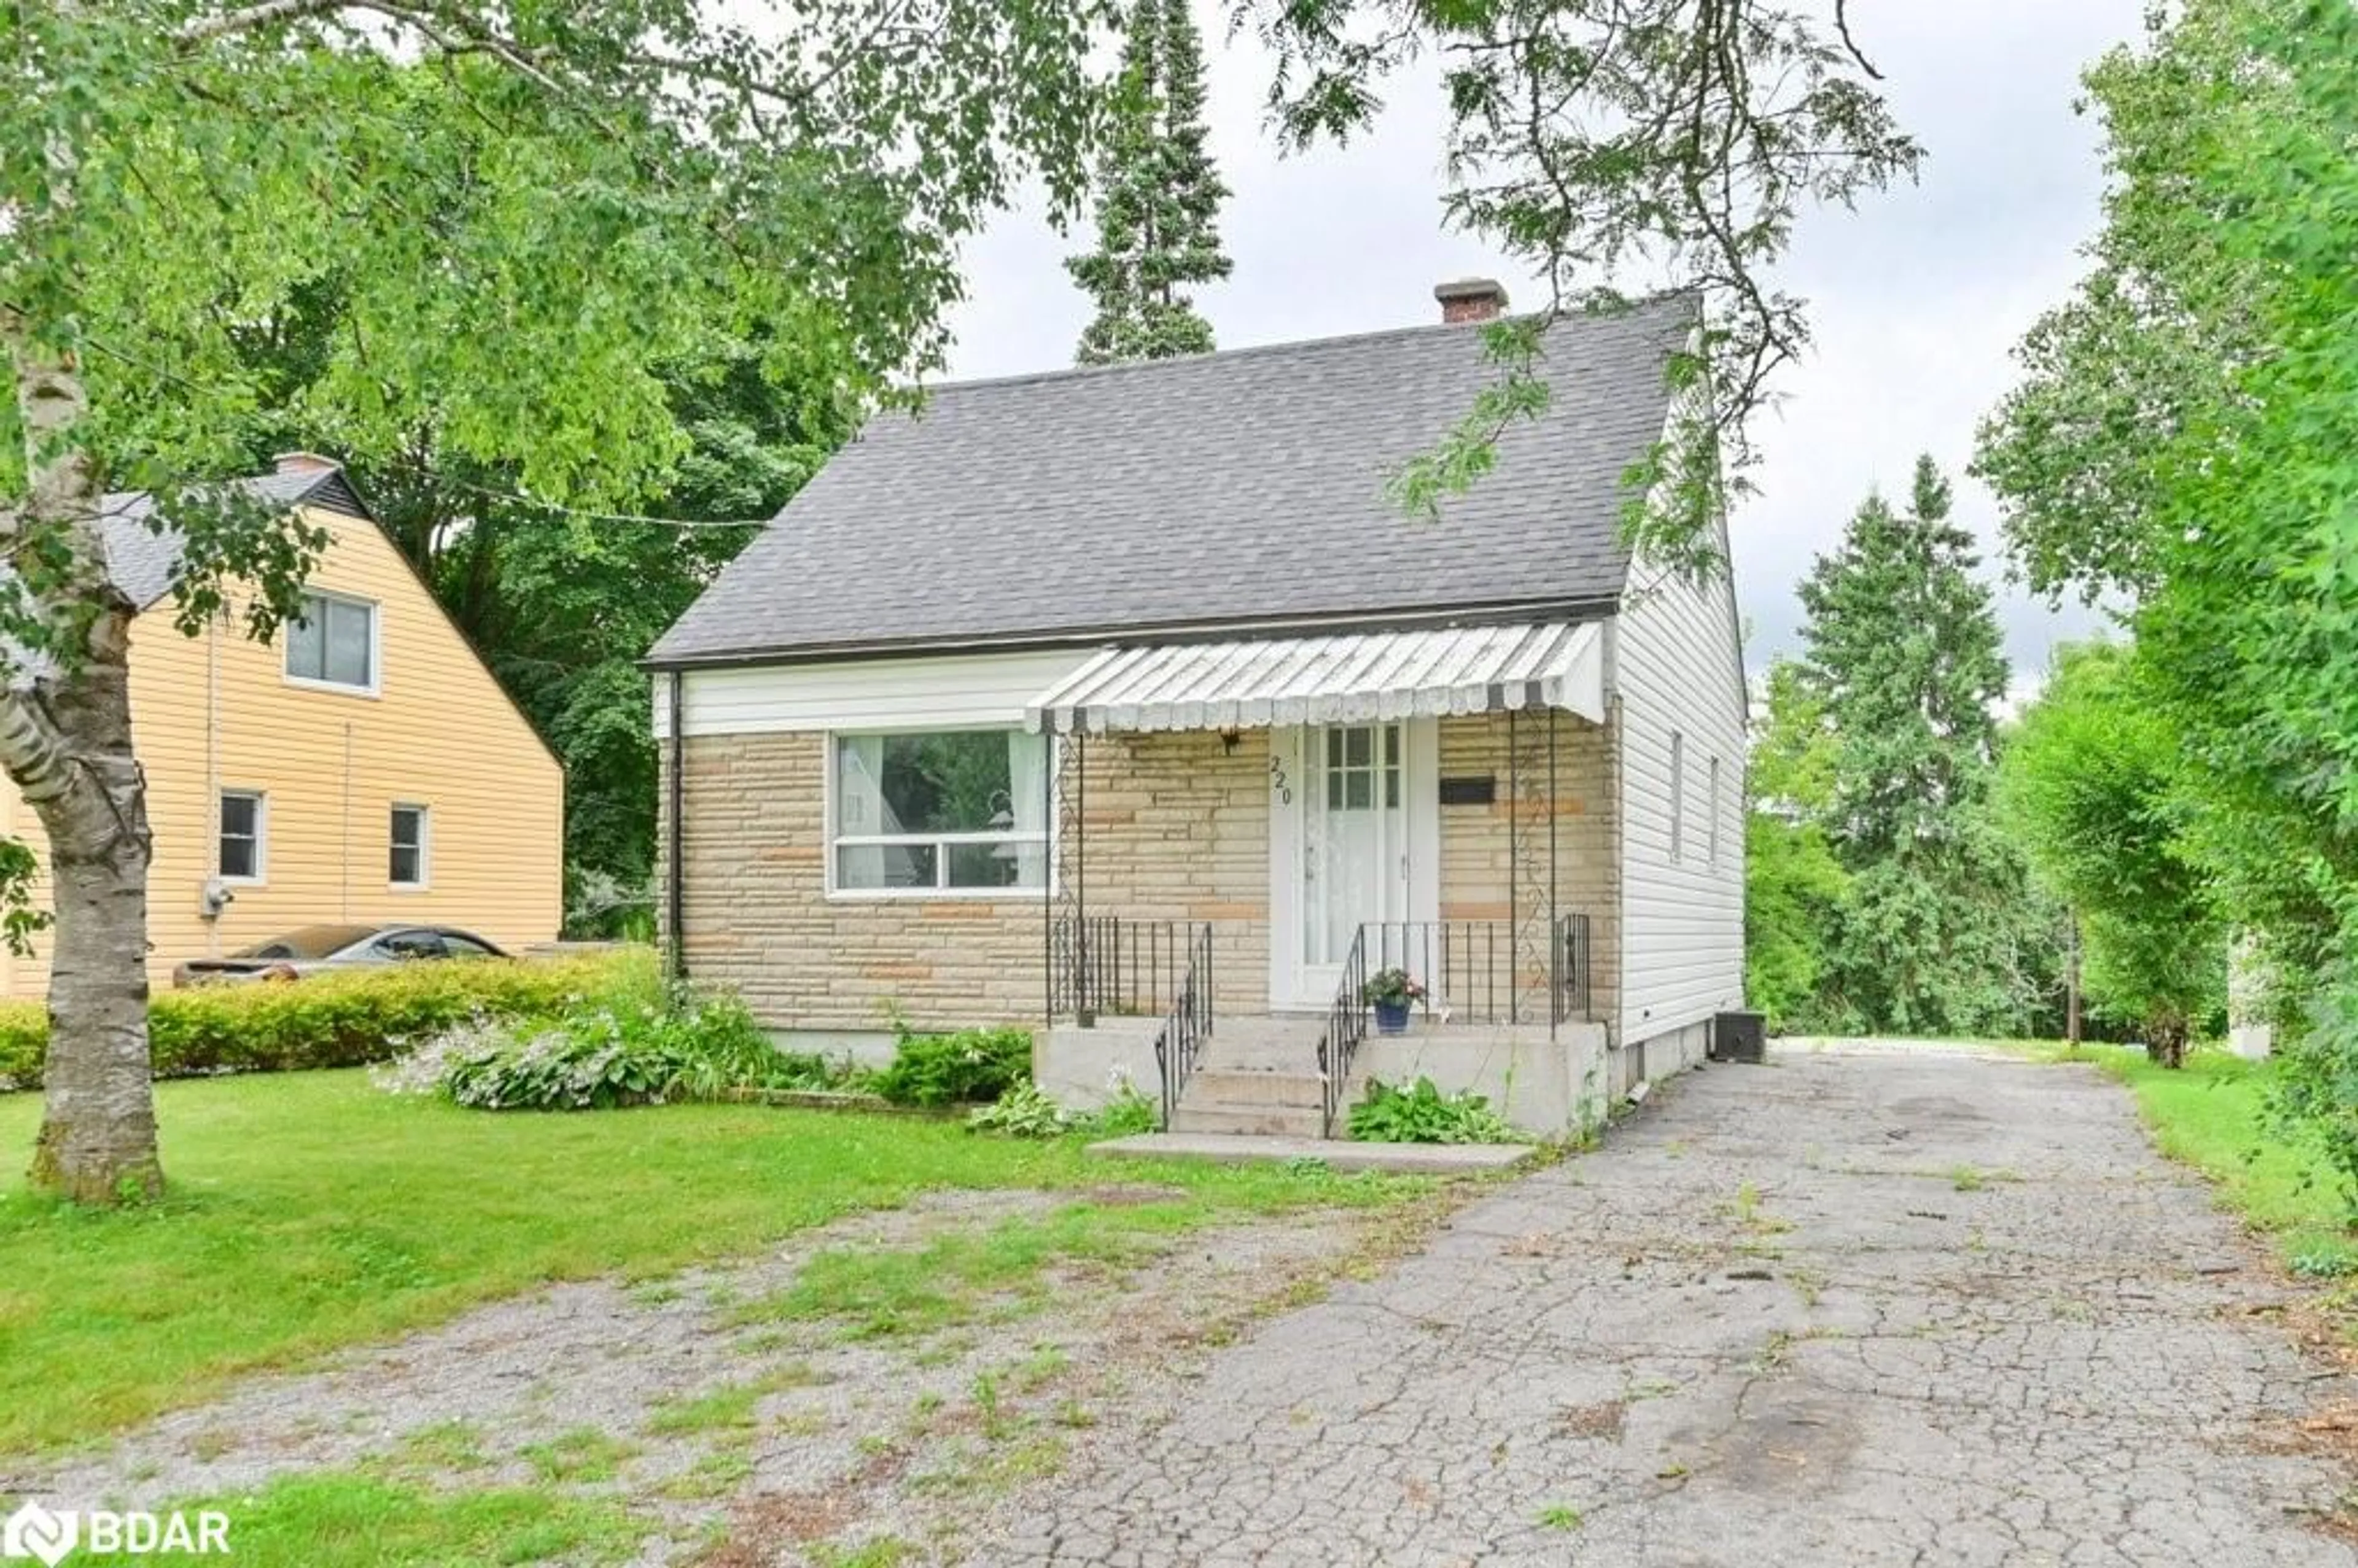 Cottage for 220 Pine St, Belleville Ontario K8N 2M7